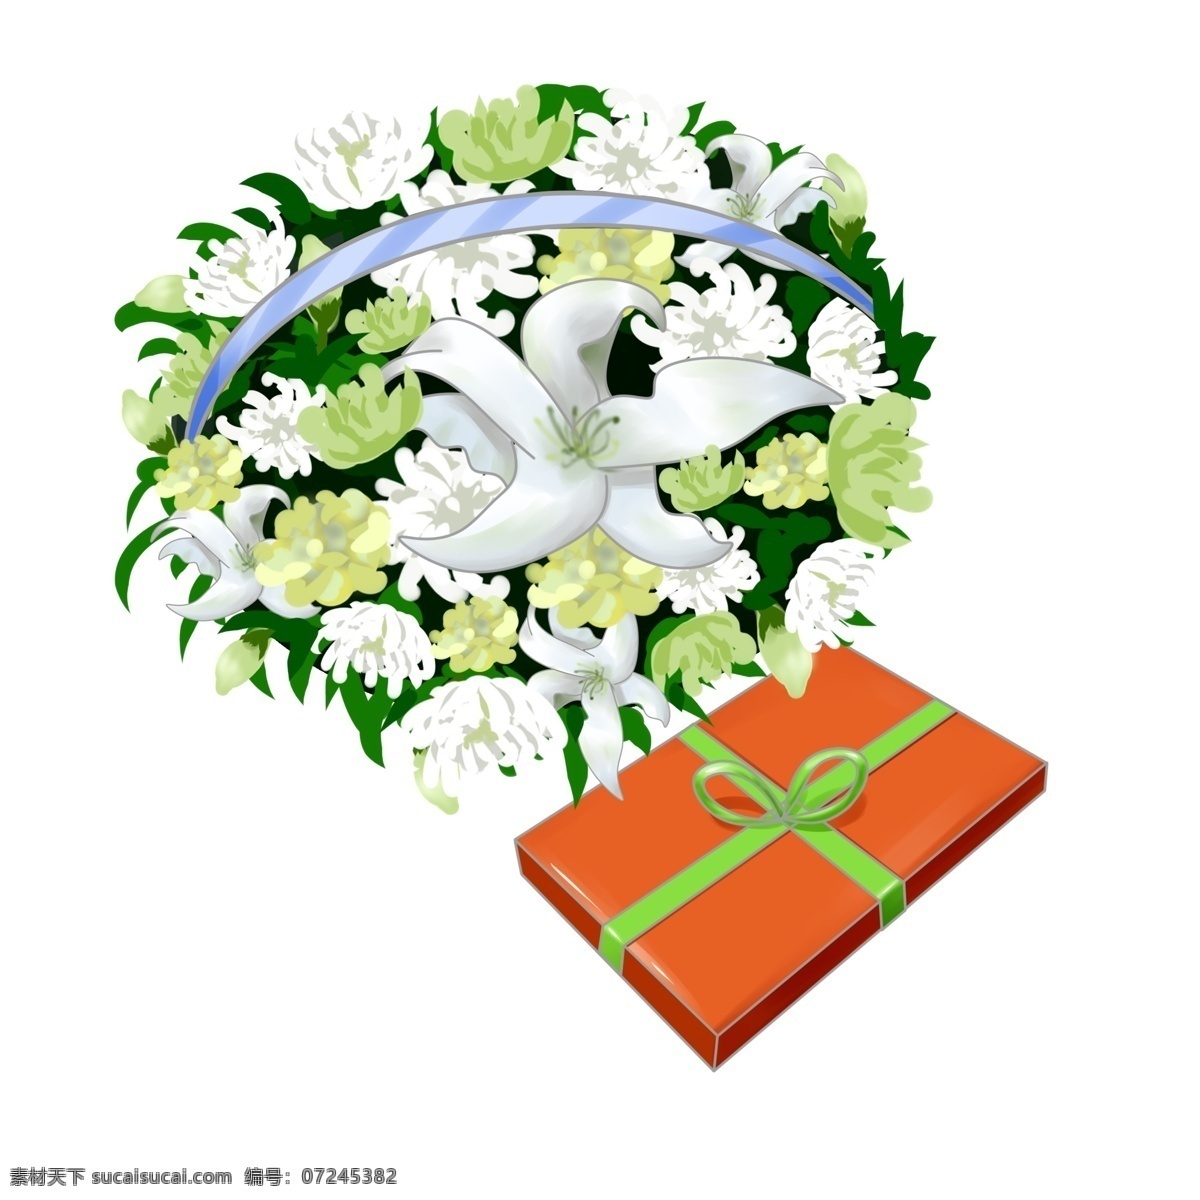 清明节 花篮 礼盒 清明节花篮 白色的鲜花 绿色的叶子 橙色的礼盒 绿色的蝴蝶结 蝴蝶结装饰